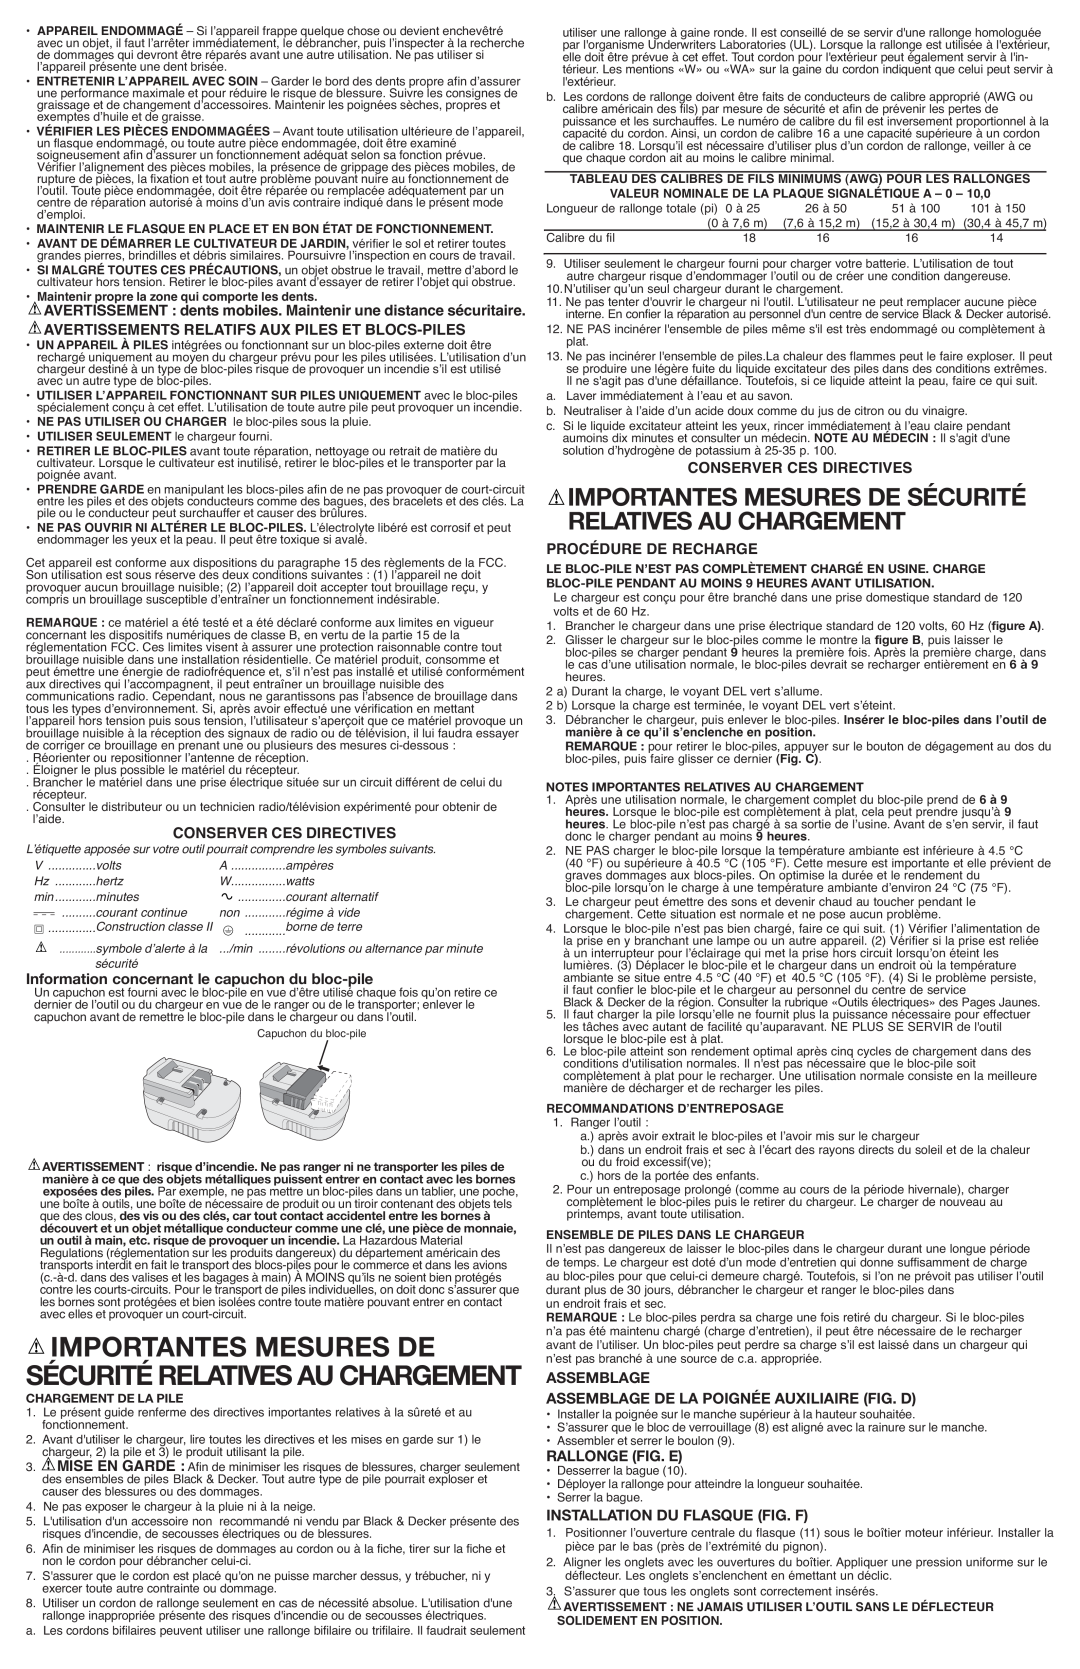 Black & Decker GC818R Avertissements Relatifs Aux Piles Et Blocs-Piles, Conserver Ces Directives, Informati, Assemblage 